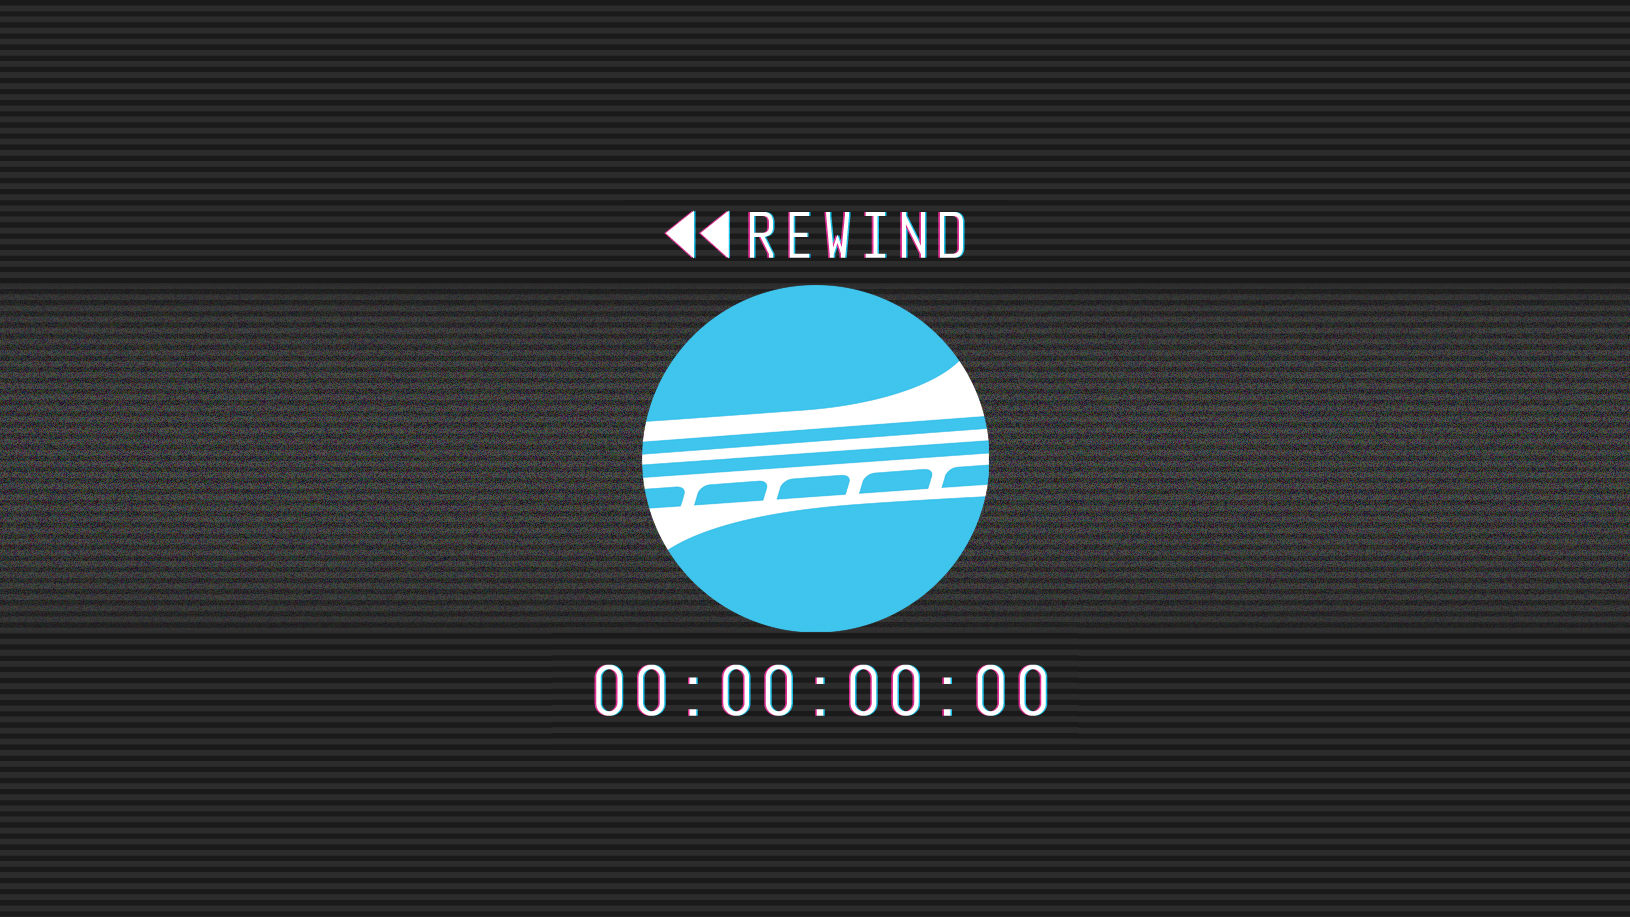 TPO rewind graphic